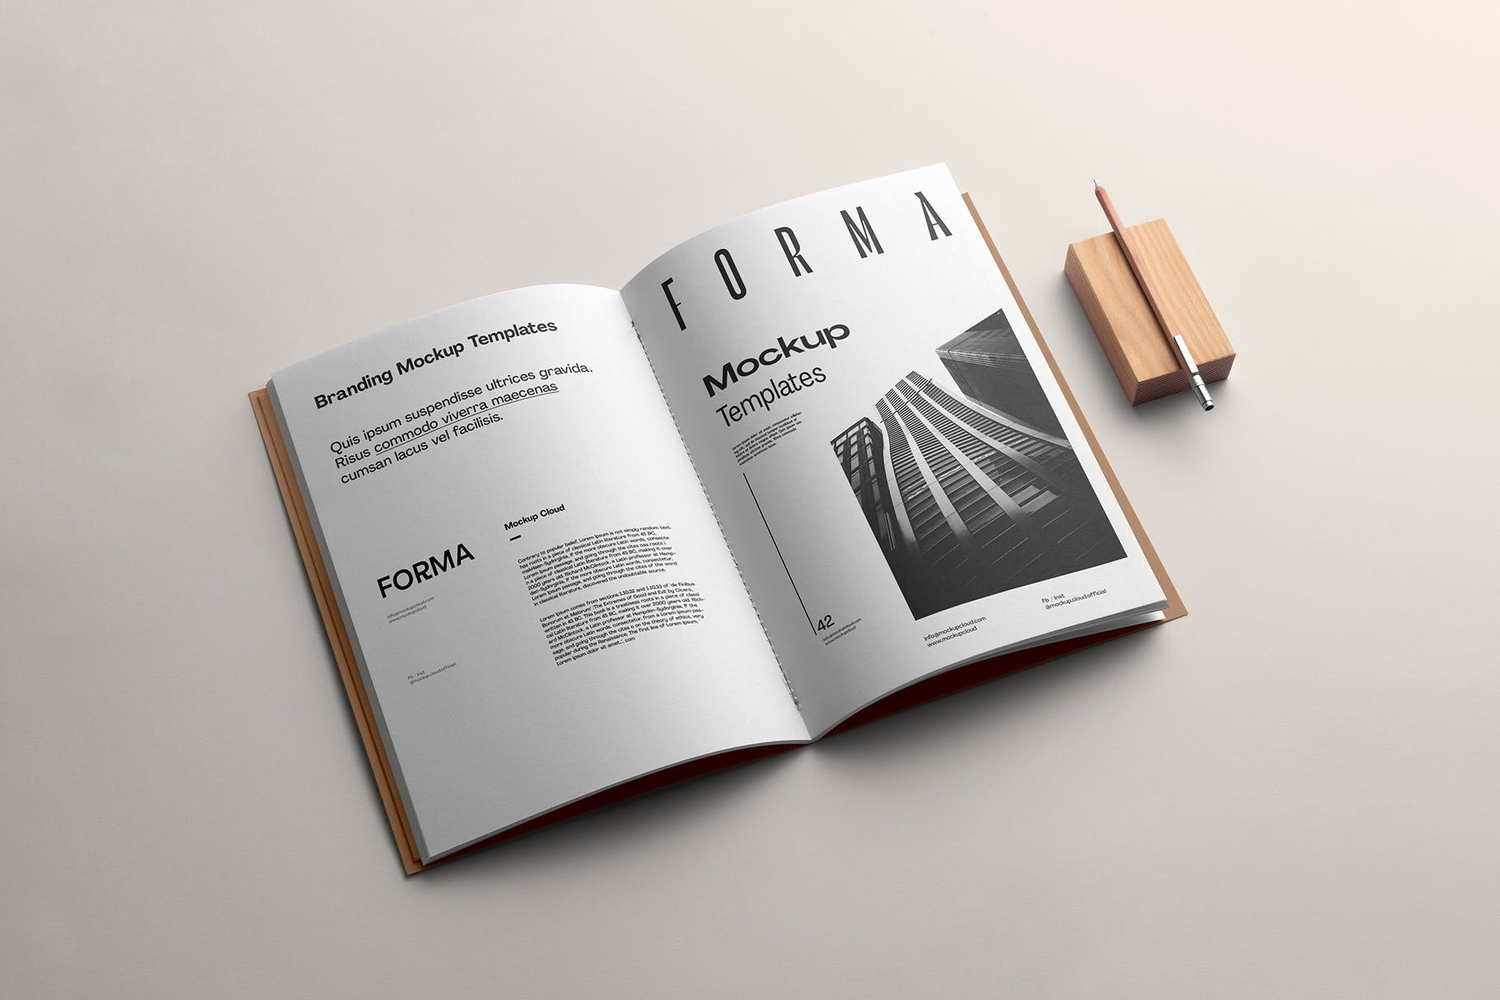 4719 9款高端质感品牌文具书籍画册vi设计贴图ps样机素材场景展示模板 Forma Branding Mockup Vol. 1@GOOODME.COM